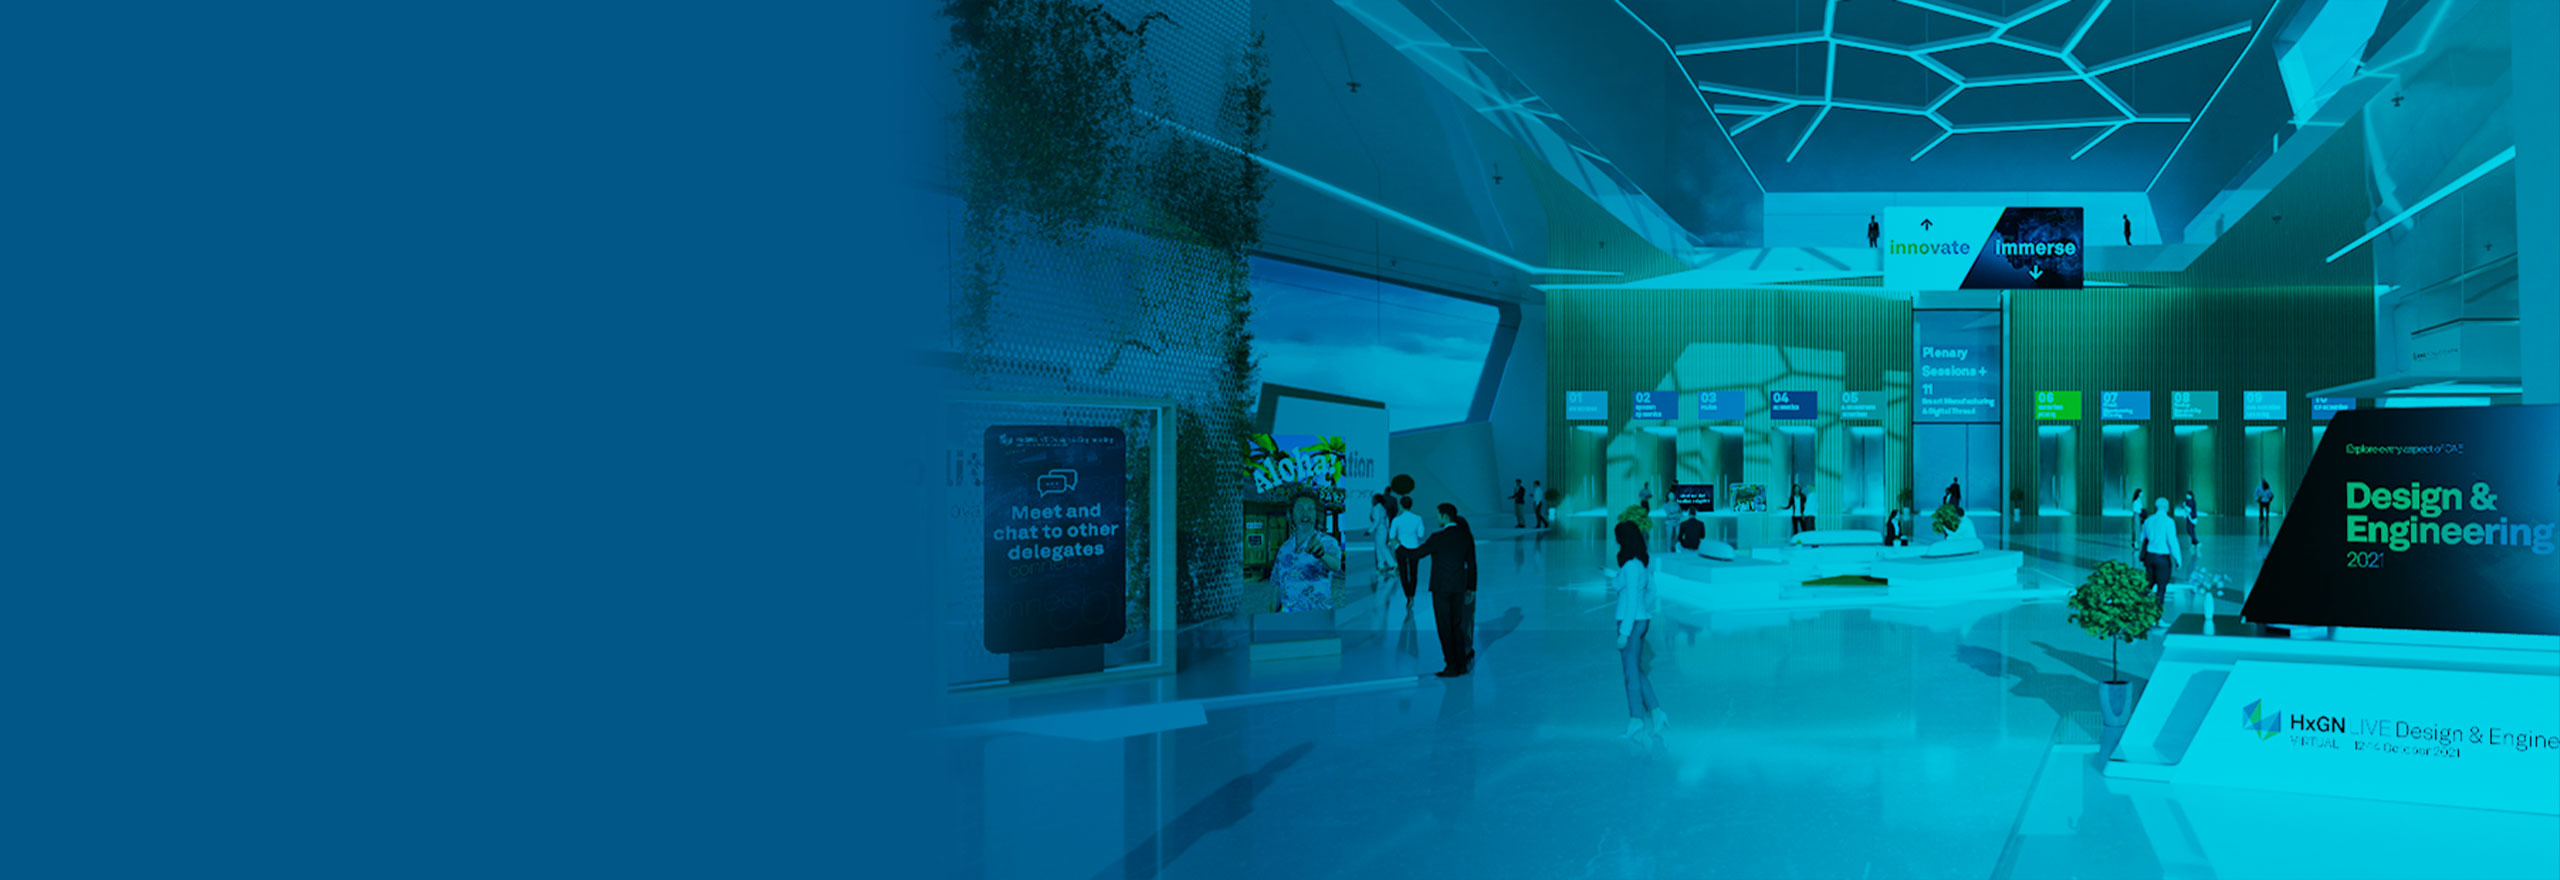 Imagem do pavilhão virtual do evento HxGN LIVE Design & Engineering 2021 mostrando várias portas e telas